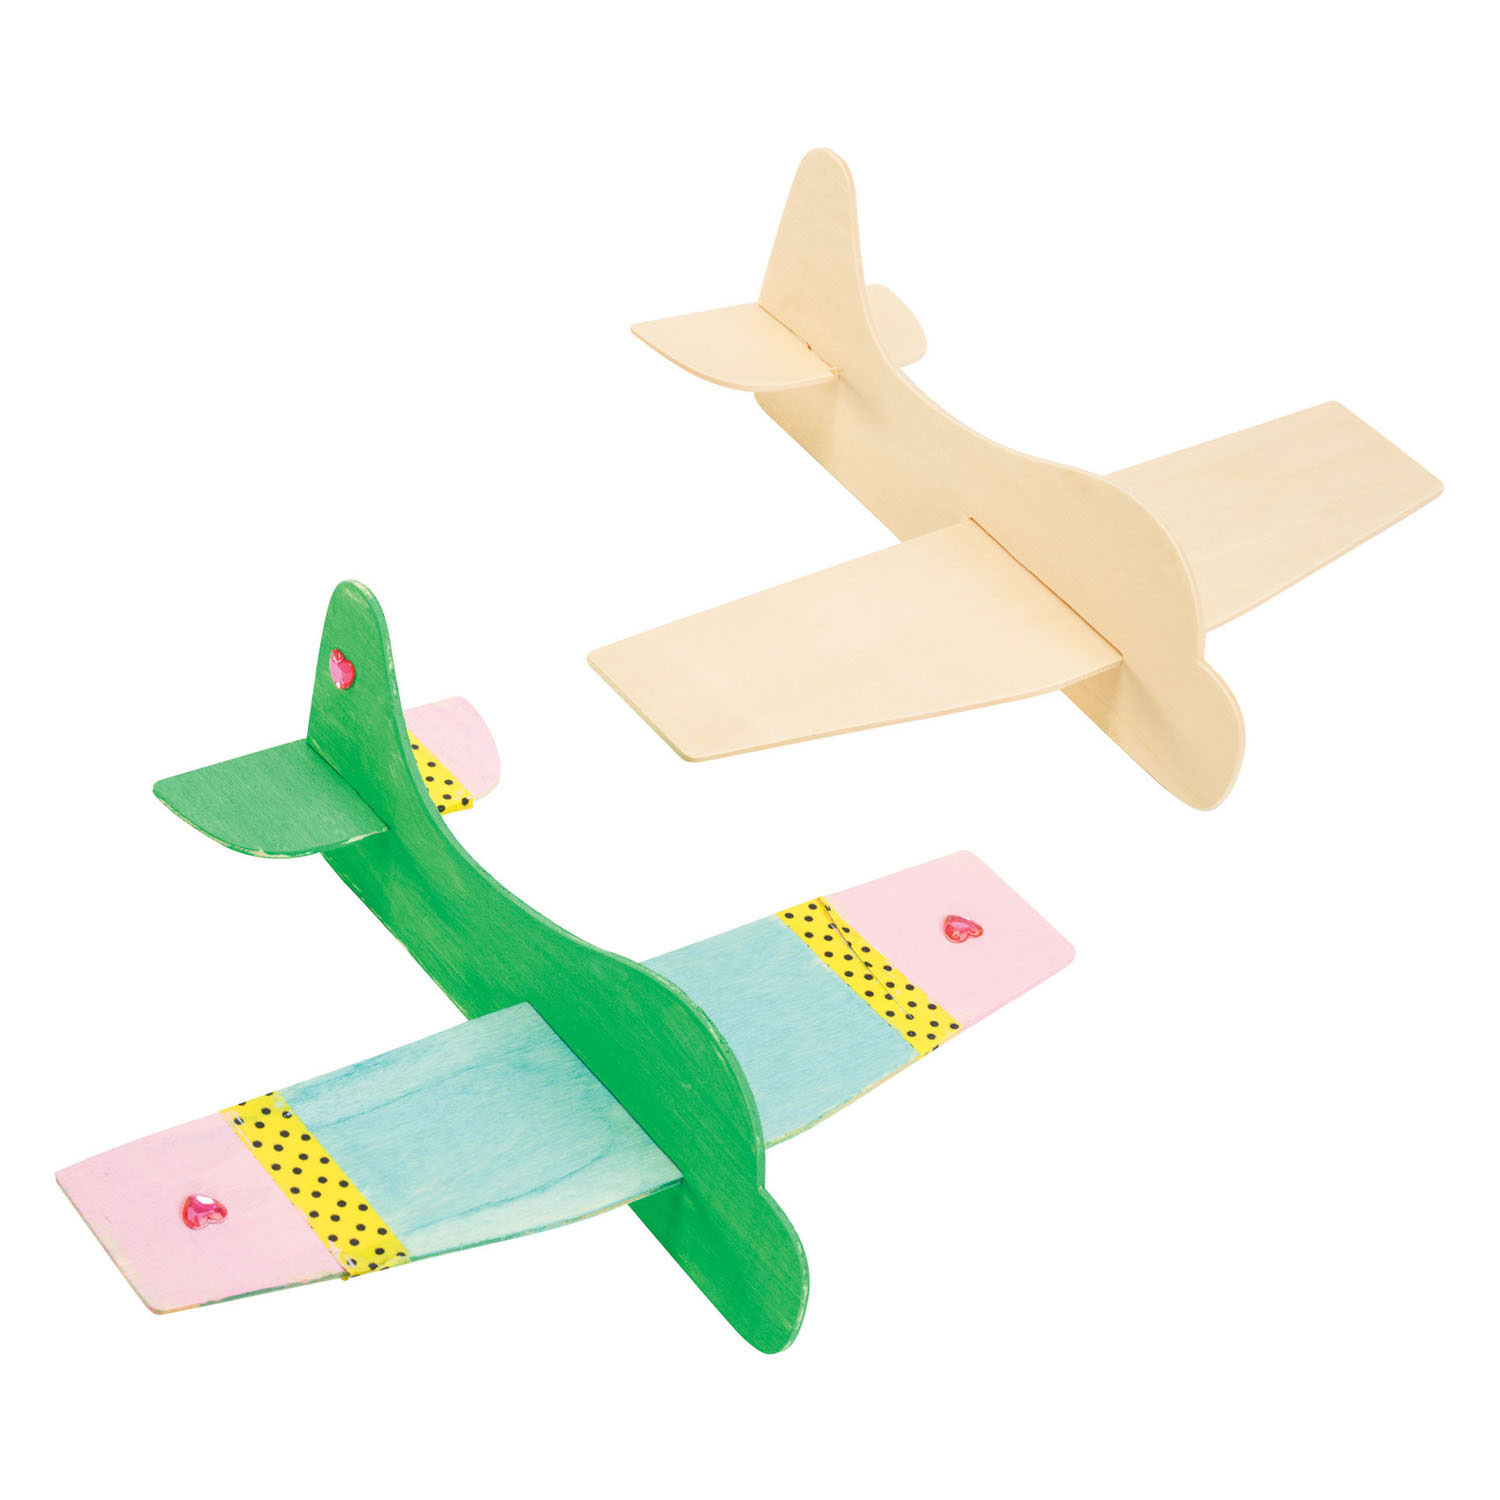 Colorations - Herstellung von Modellflugzeugen aus Holz, 12er-Set